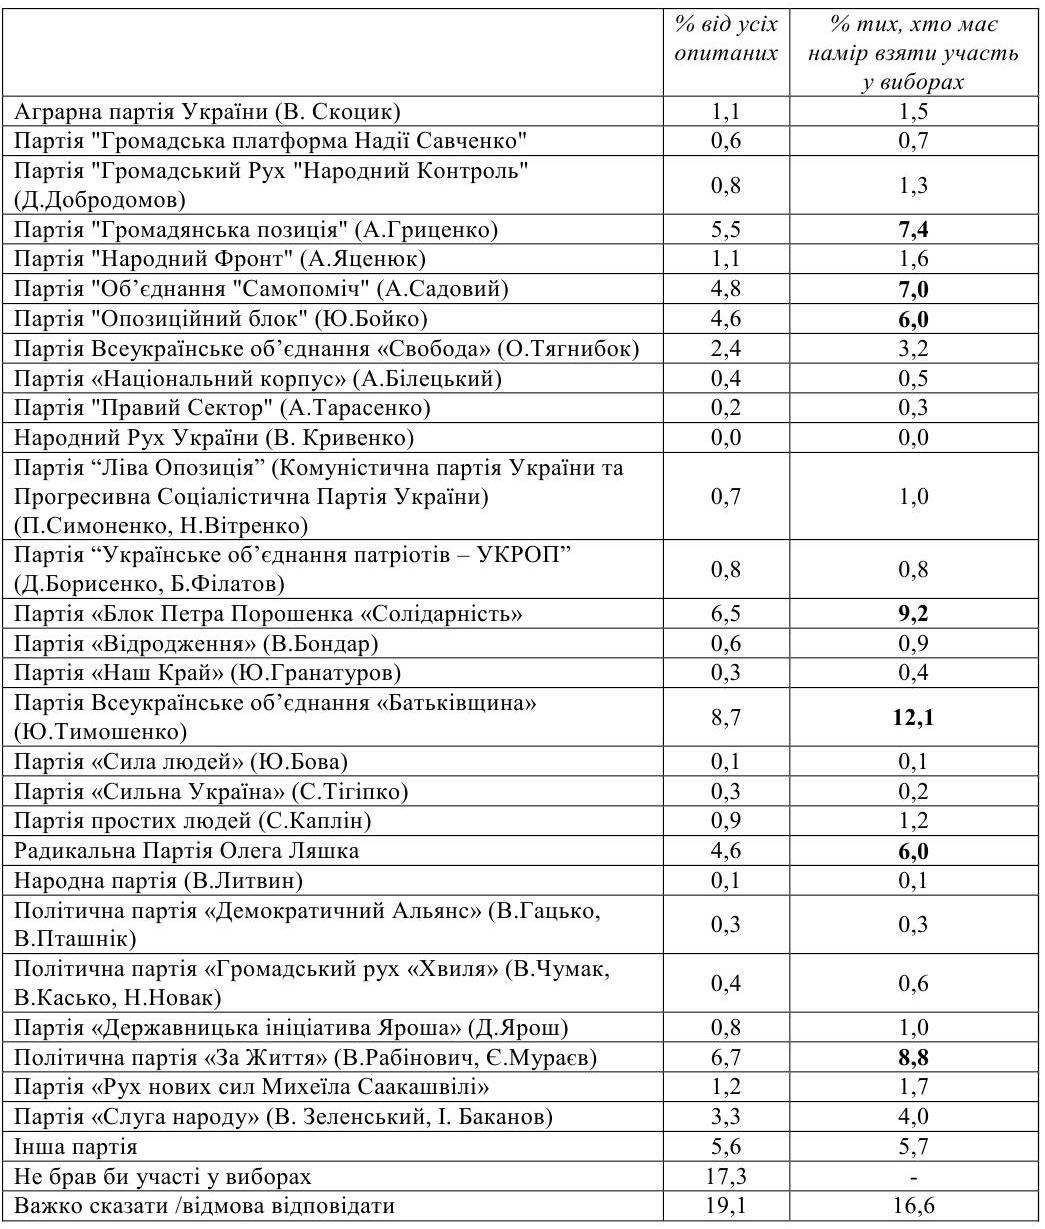 Рейтинг Вакарчука в 2 раза выше, чем у Зеленского, но партия Слуга народа уже набирает 4% 1